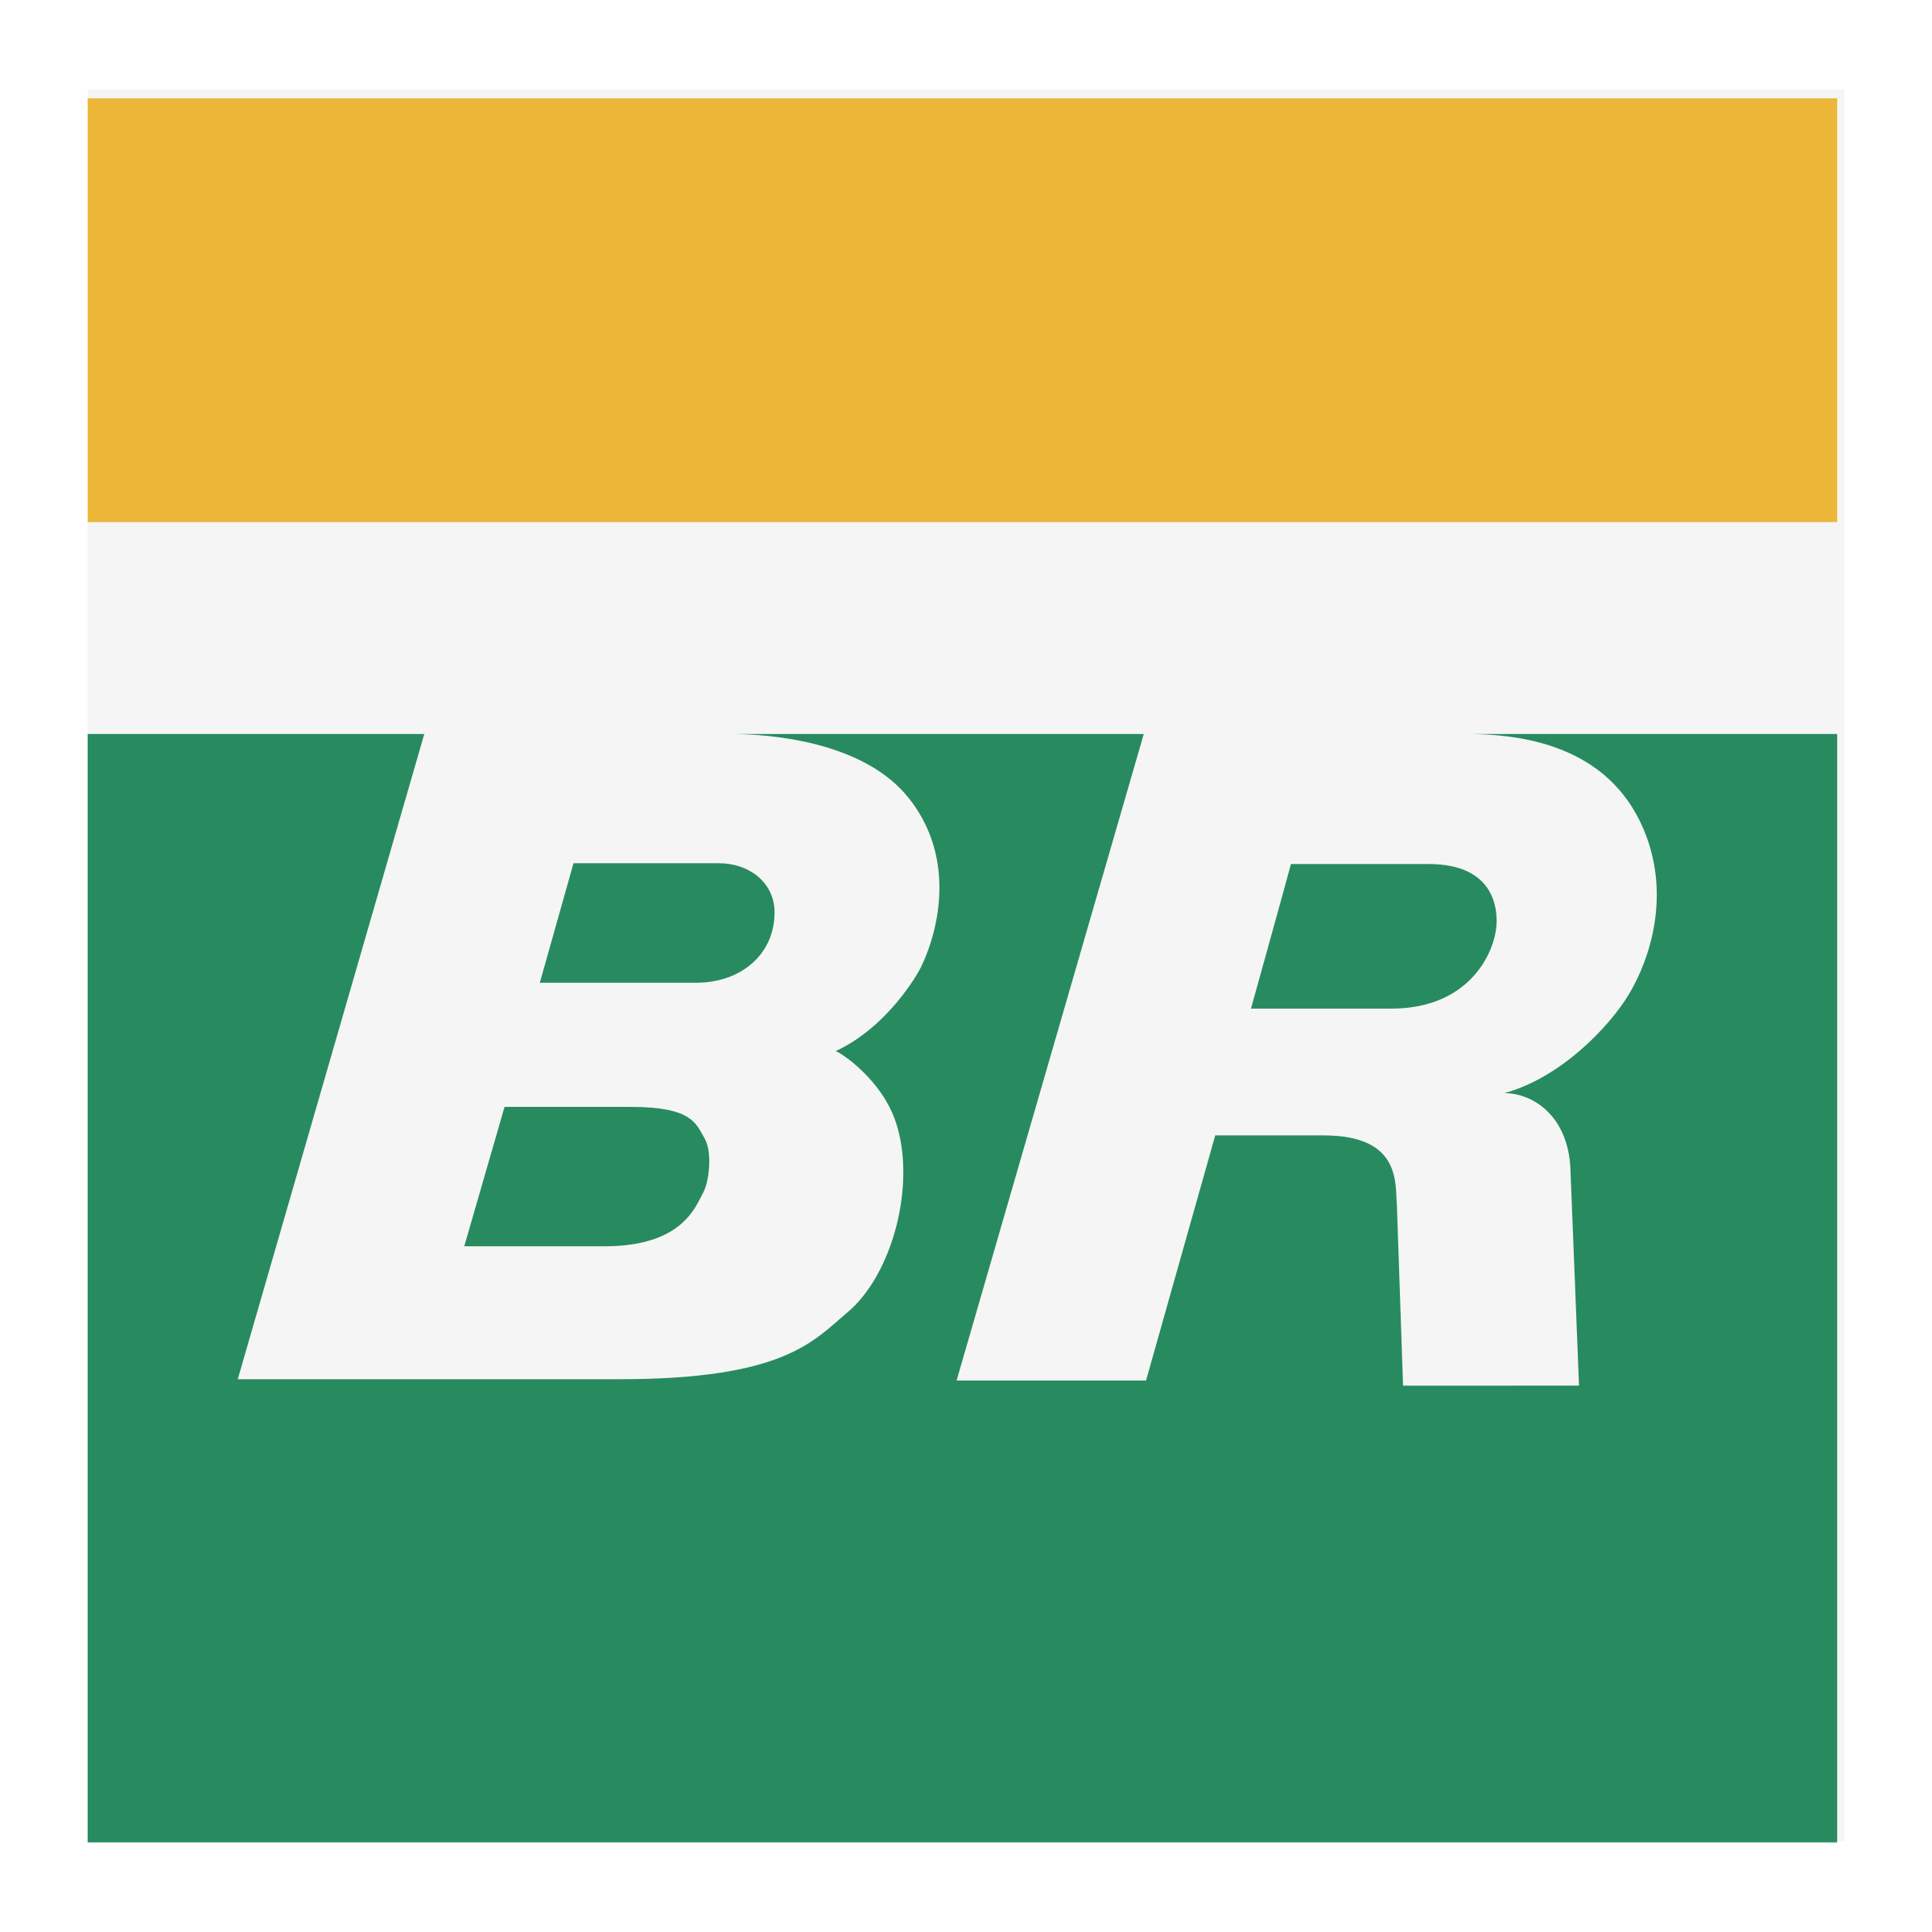 Petrobras Logo Transparent Background